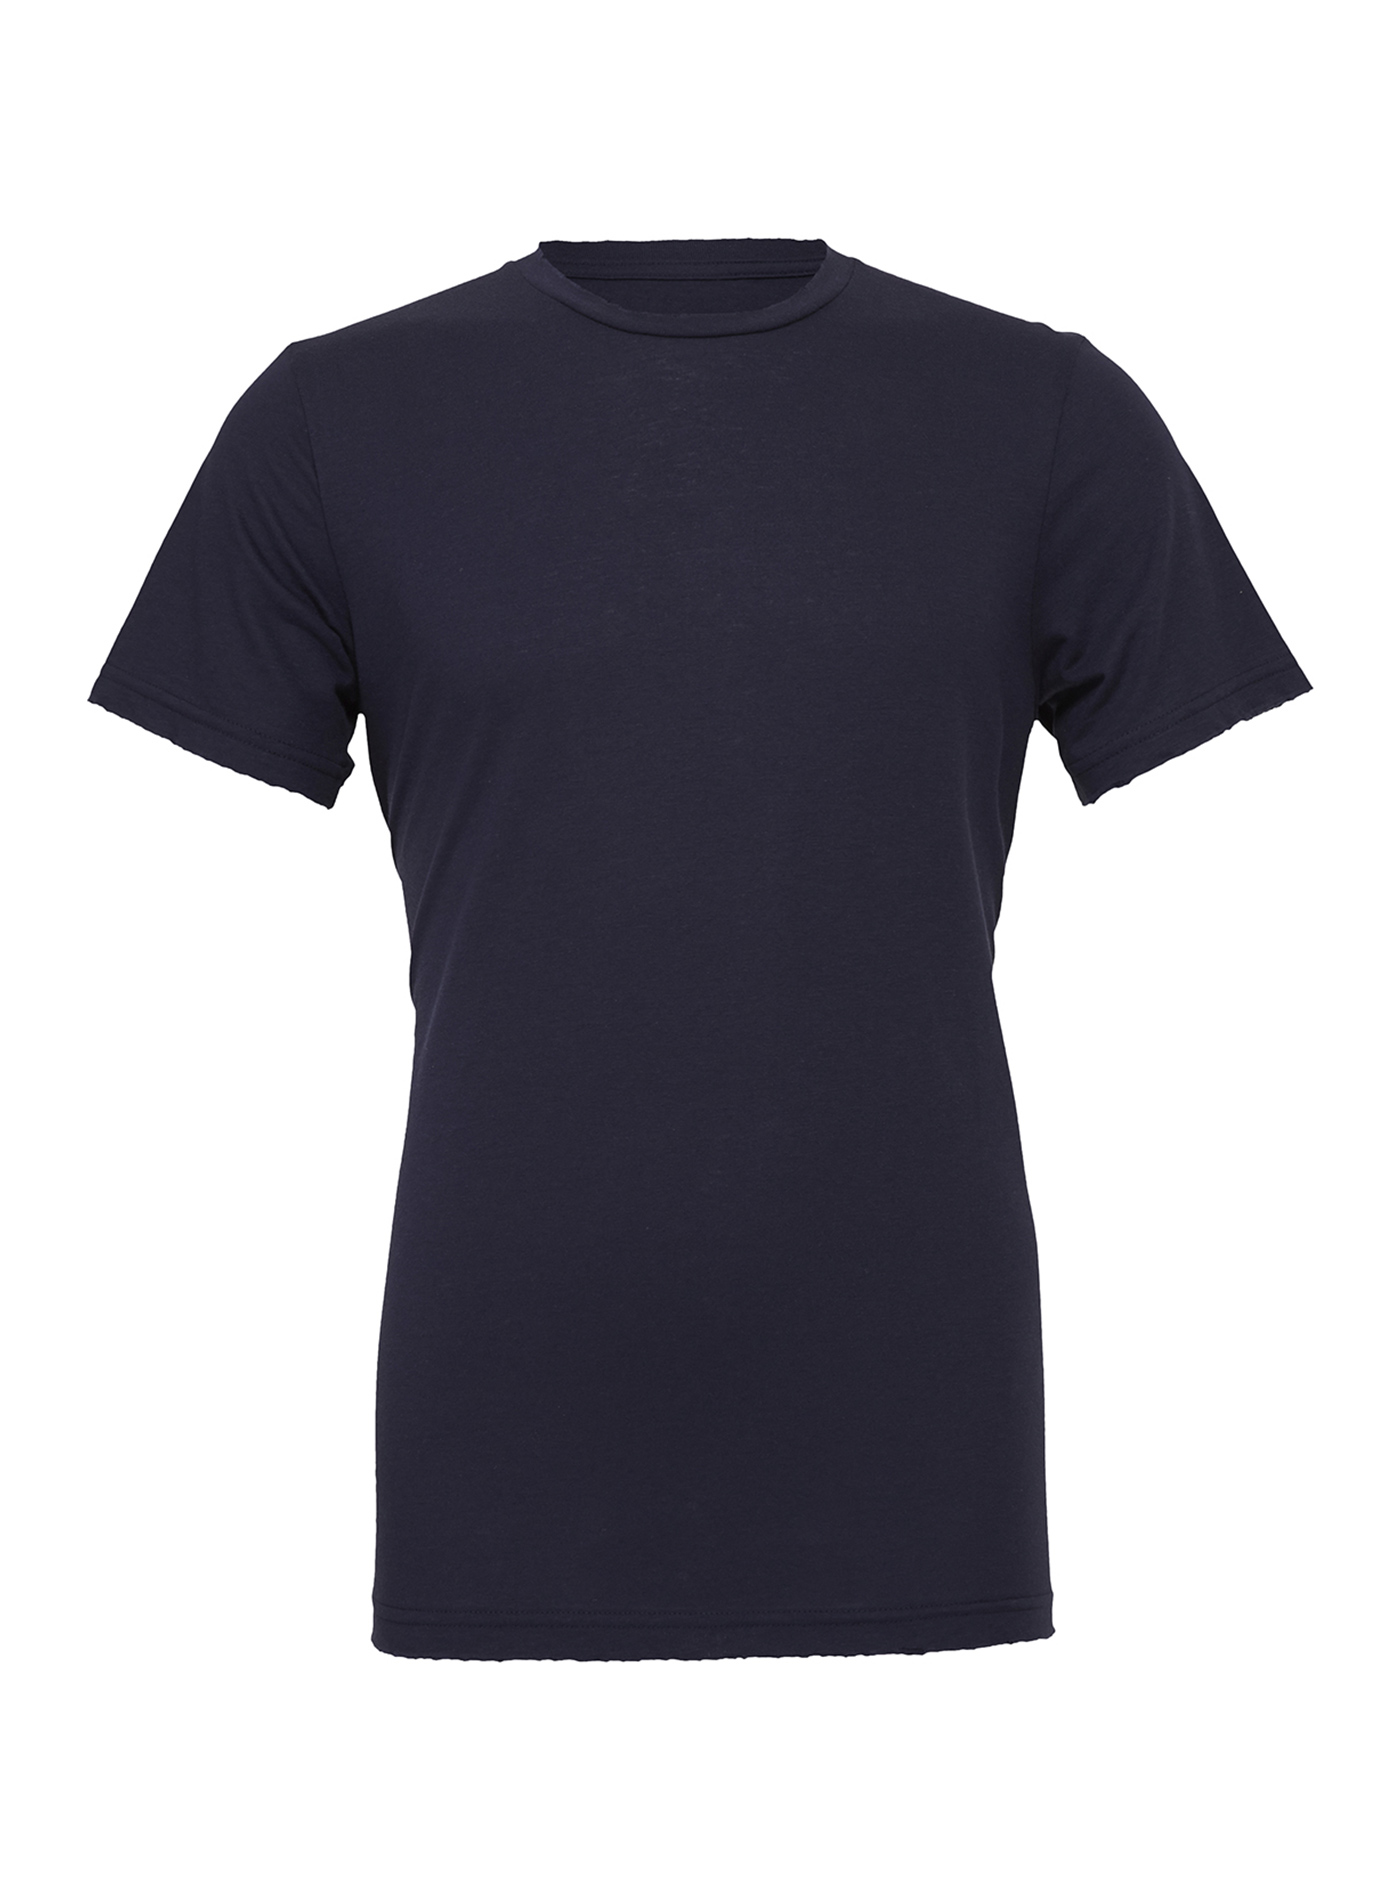 Unisex tričko Jersey - tmavě modrá L